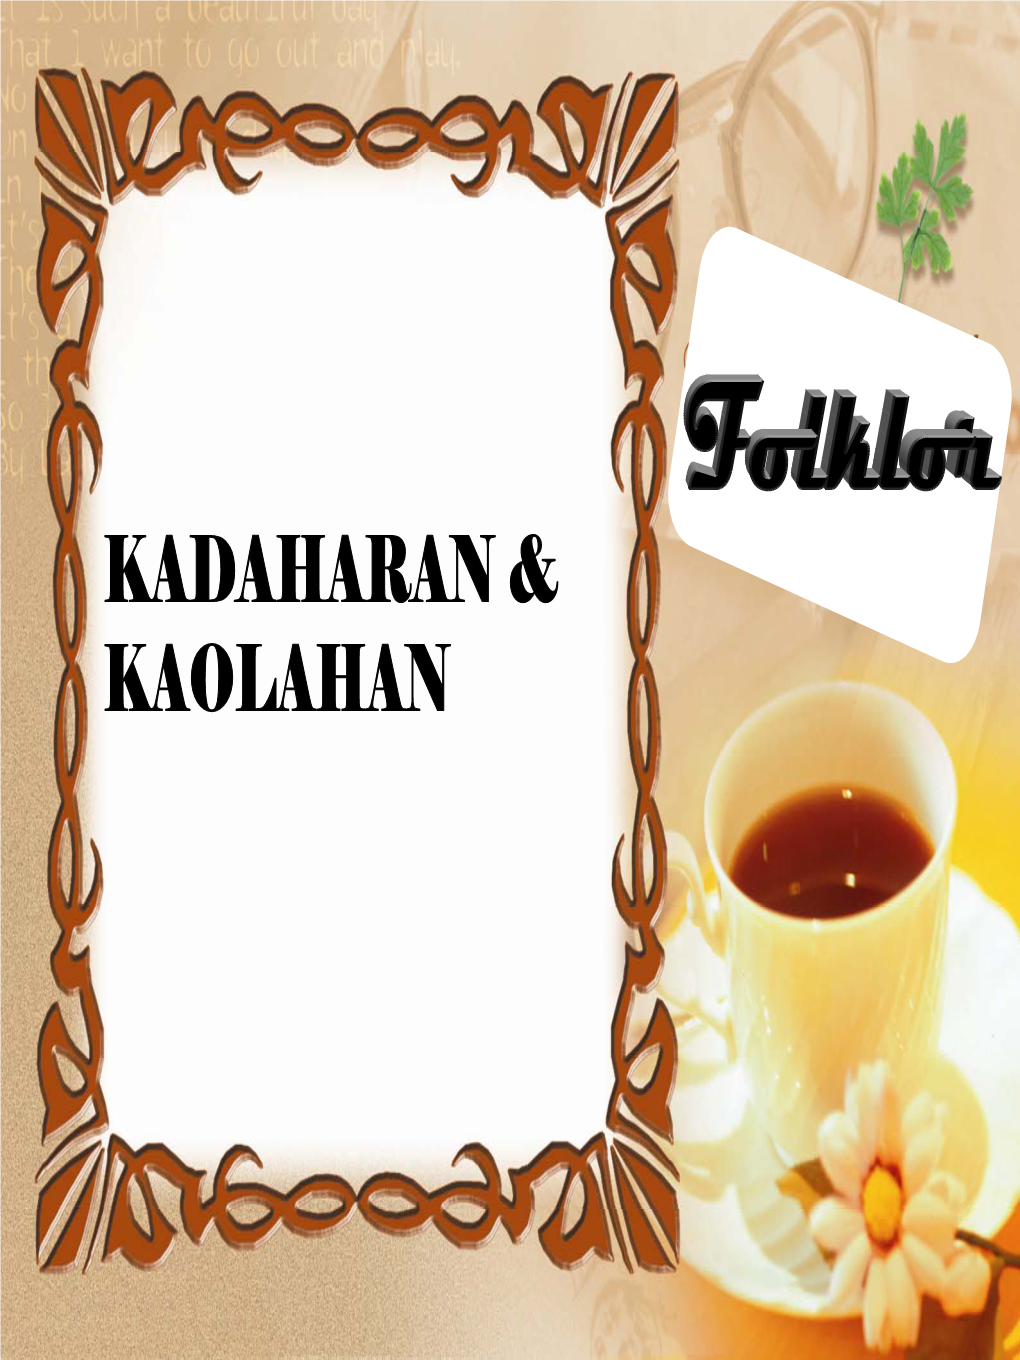 Kadaharan & Kaolahan